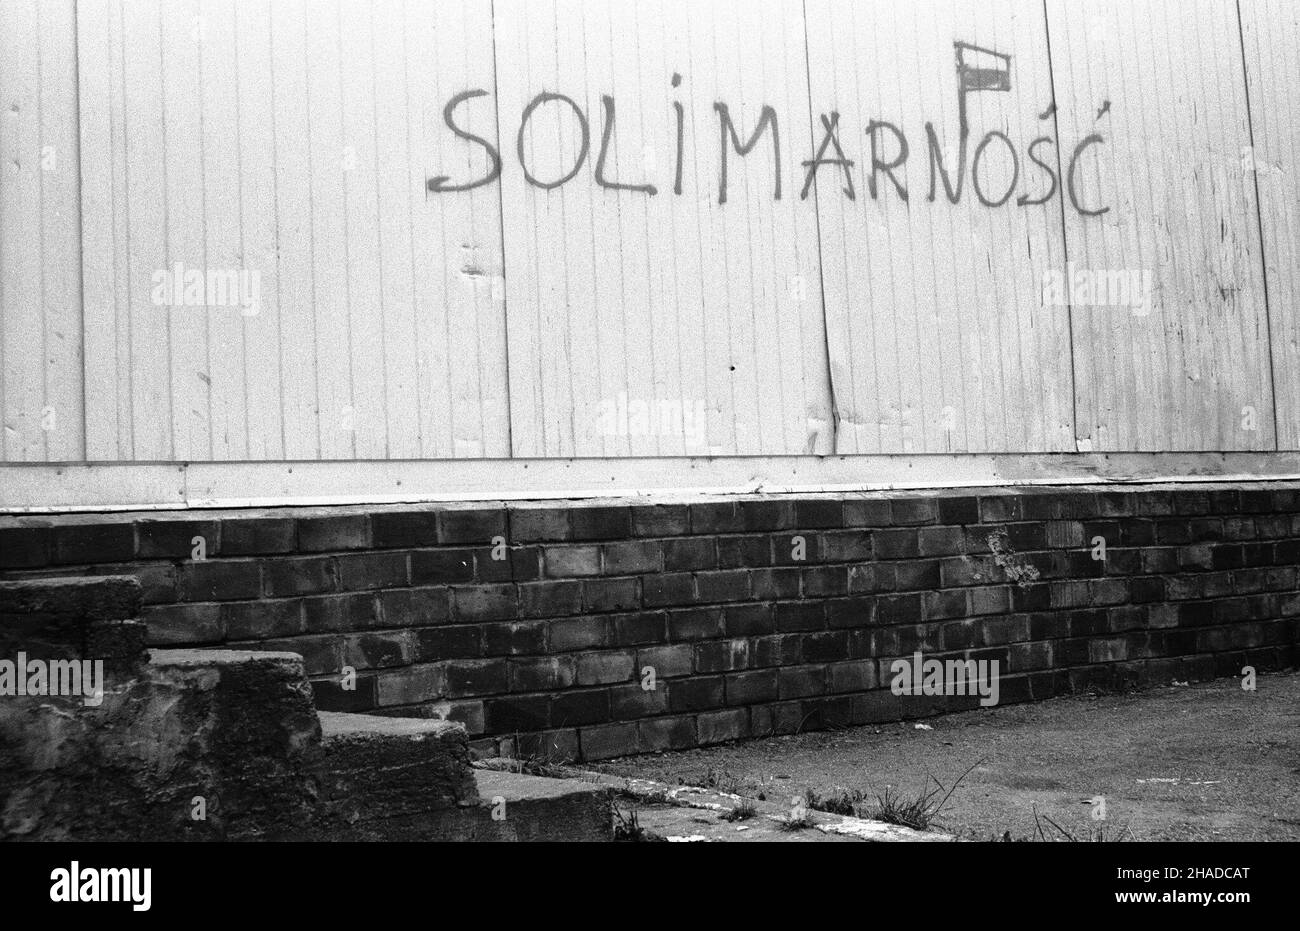 Warszawa, 12.1990. Pojawi³a siê nowa forma wypowiedzi publicznej - graffiti polityczne. Nz. napis SOLIMARNOŒÆ. (ptr) PAP/CAF/Jab³onowski      Warsaw, 12.1990. A new form of expression appeared - political graffitti. Pictured: graffitti on the wall reading 'Solivanity' (instead of Solidarity).  (ptr) PAP/CAF/Jablonowski Stock Photo